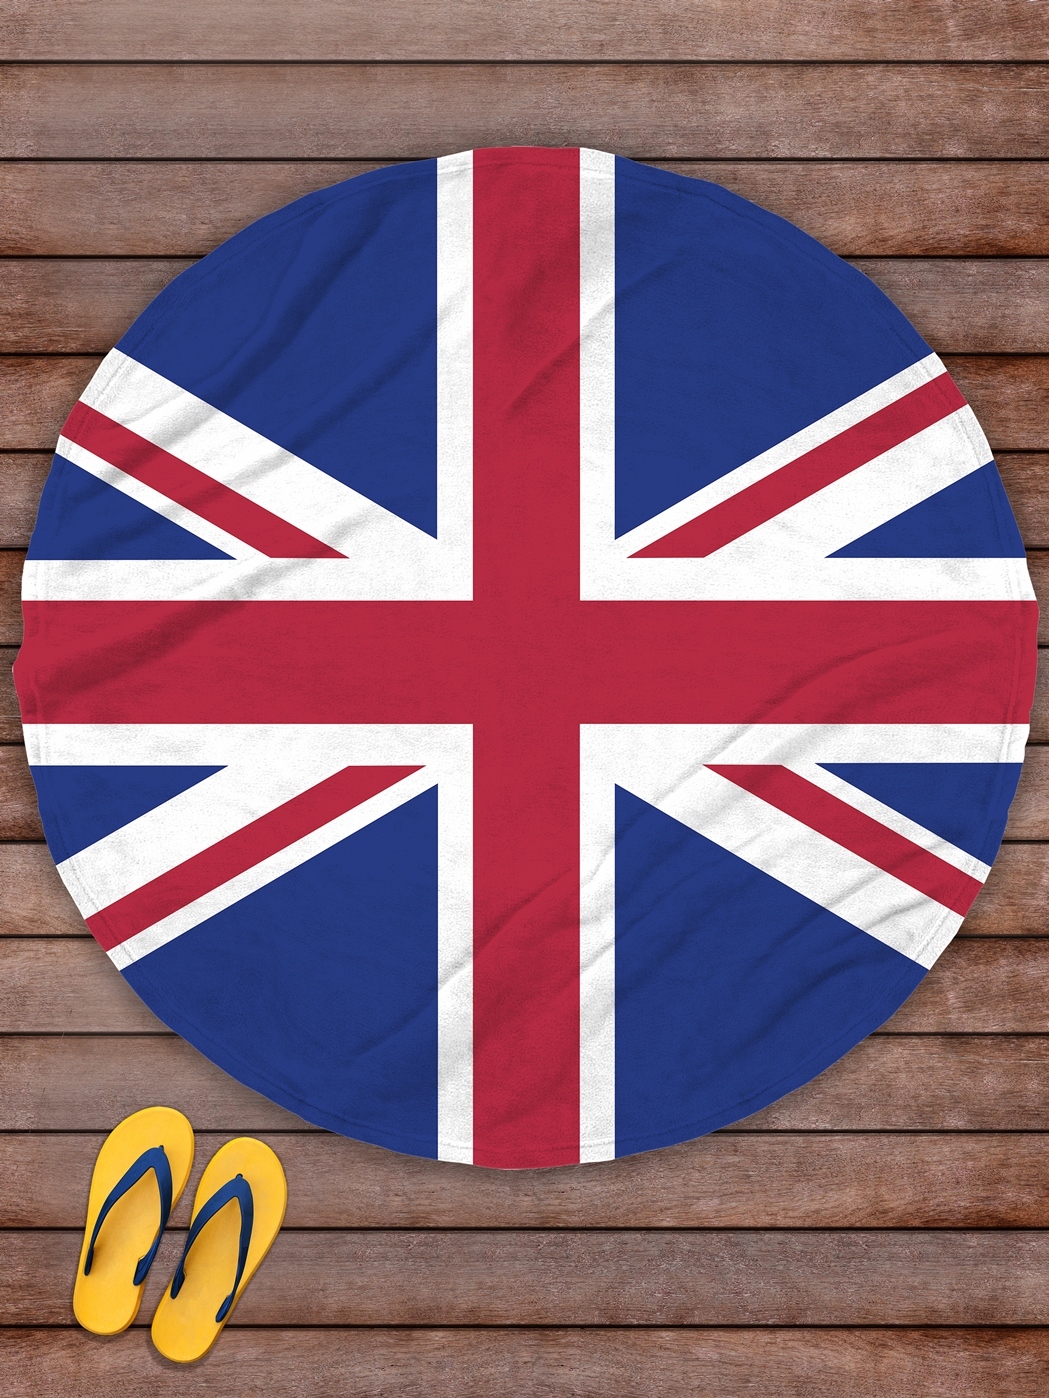 Покрывало Флаг Великобритании (145 см), размер Без наволочек sfx660622 Покрывало Флаг Великобритании (145 см) - фото 1